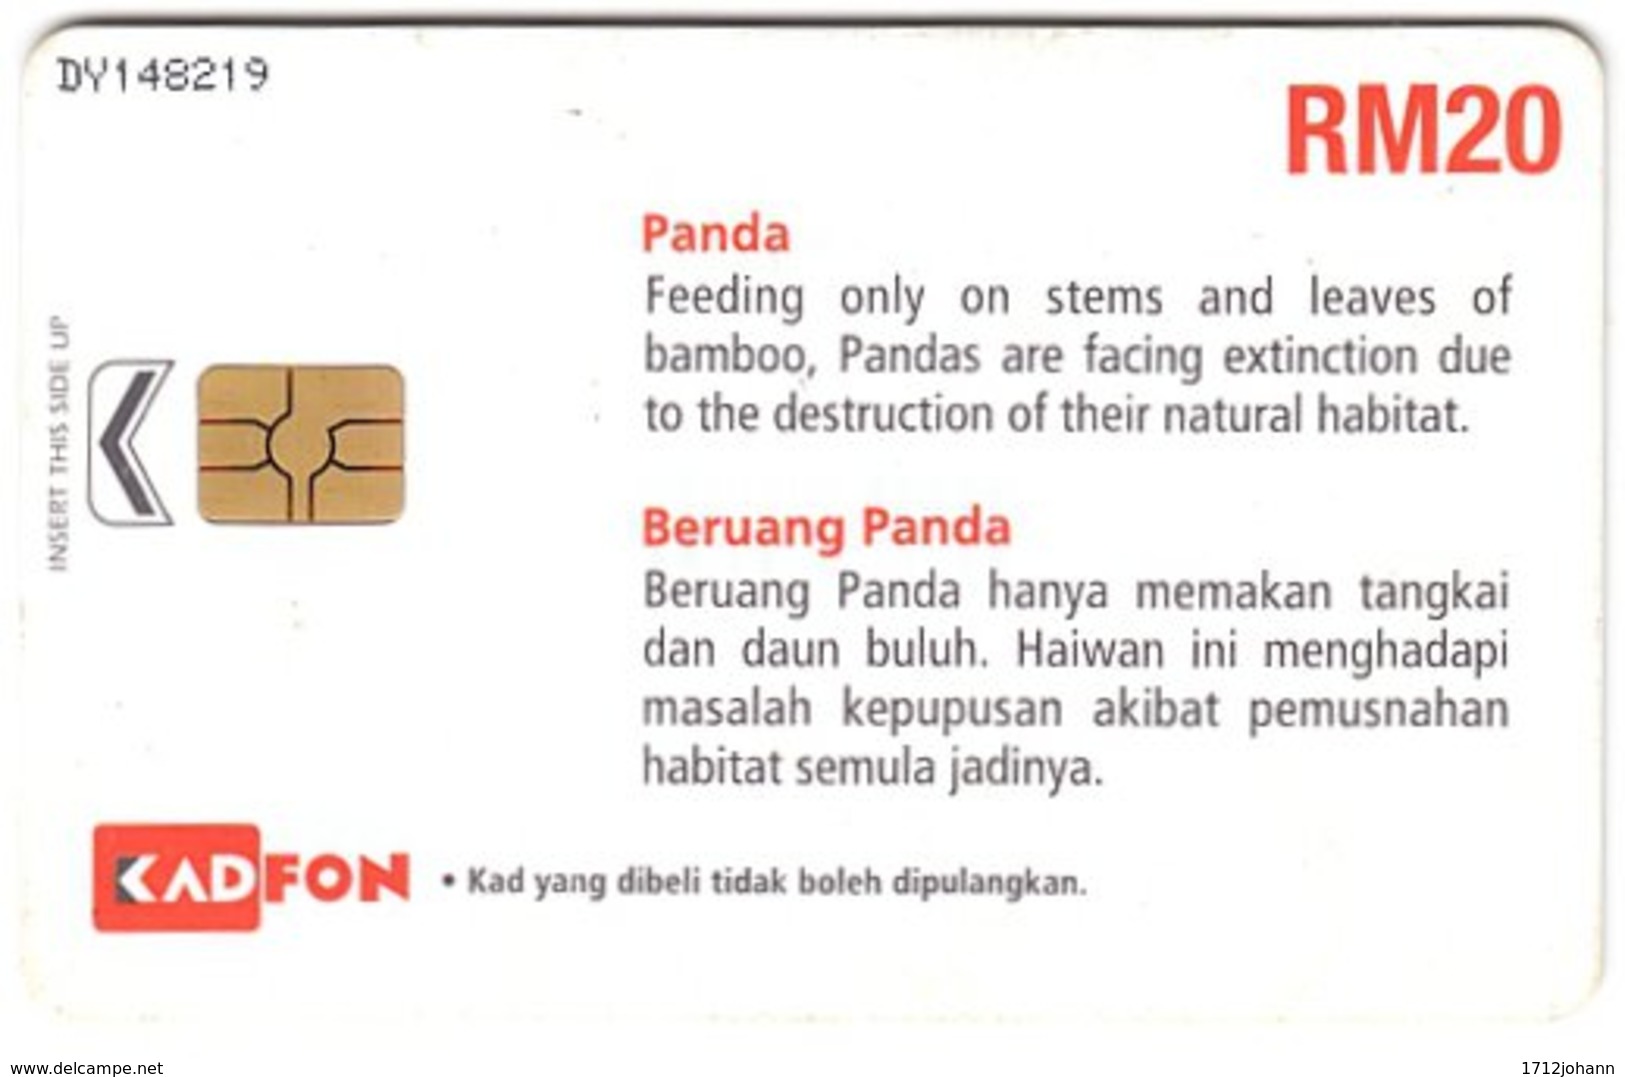 MALAYSIA A-996 Chip Kadfon - Toy, Panda - Used - Maleisië